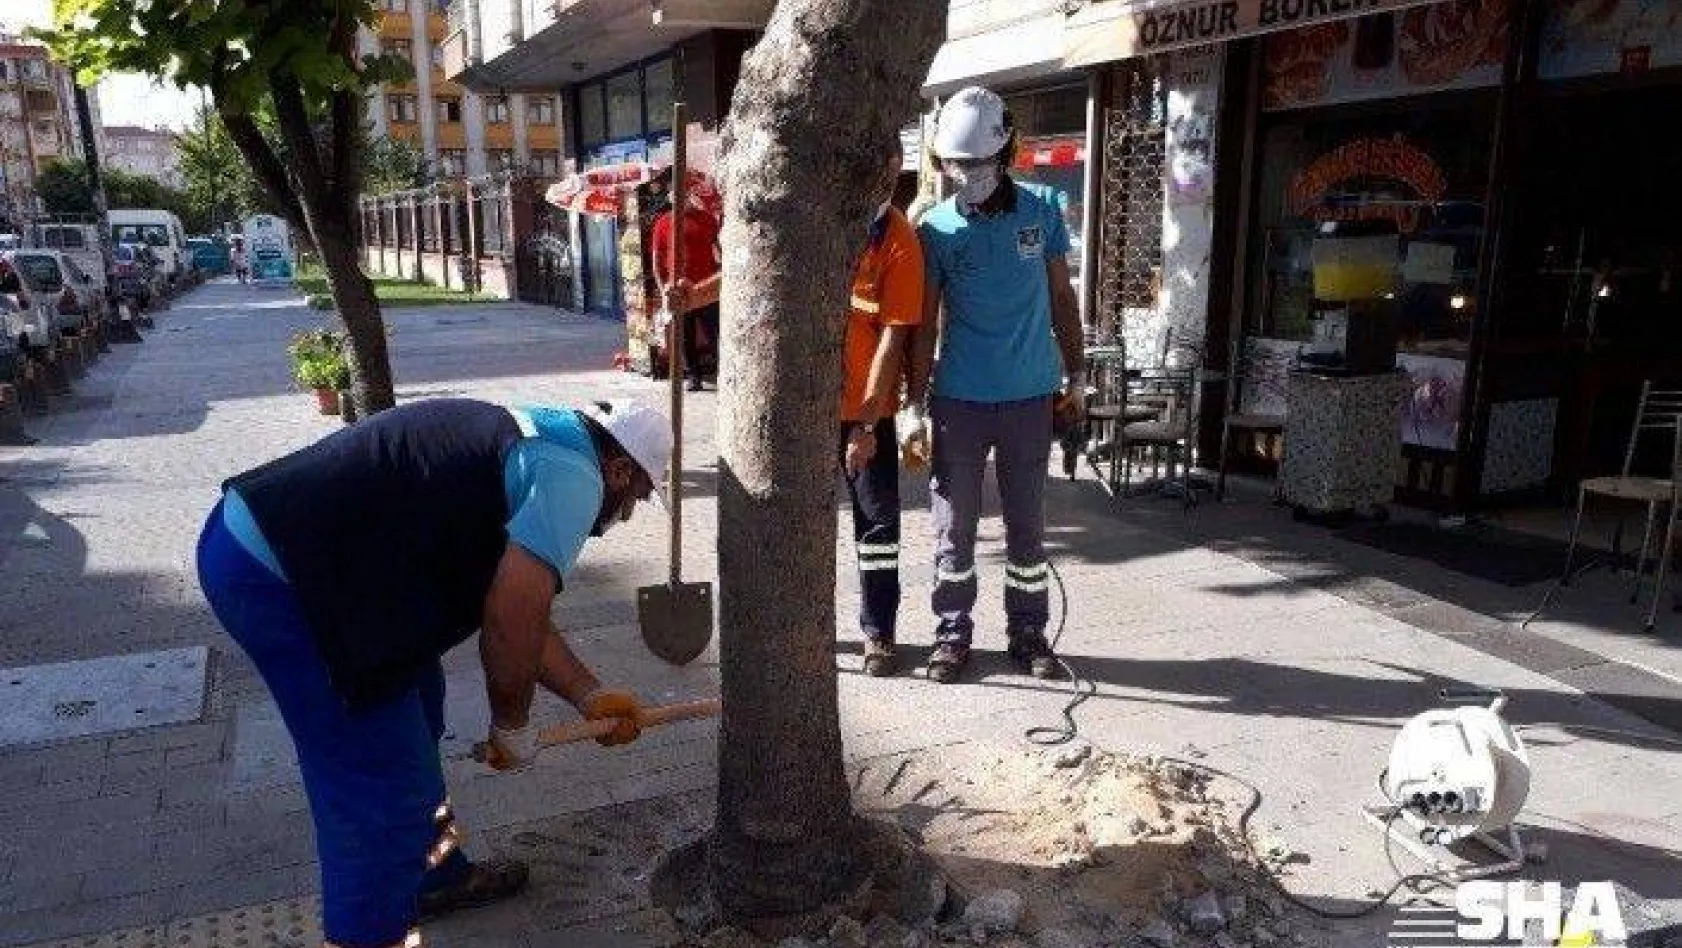 Köklerine beton dökülen ağaçlar tedavi ediliyor